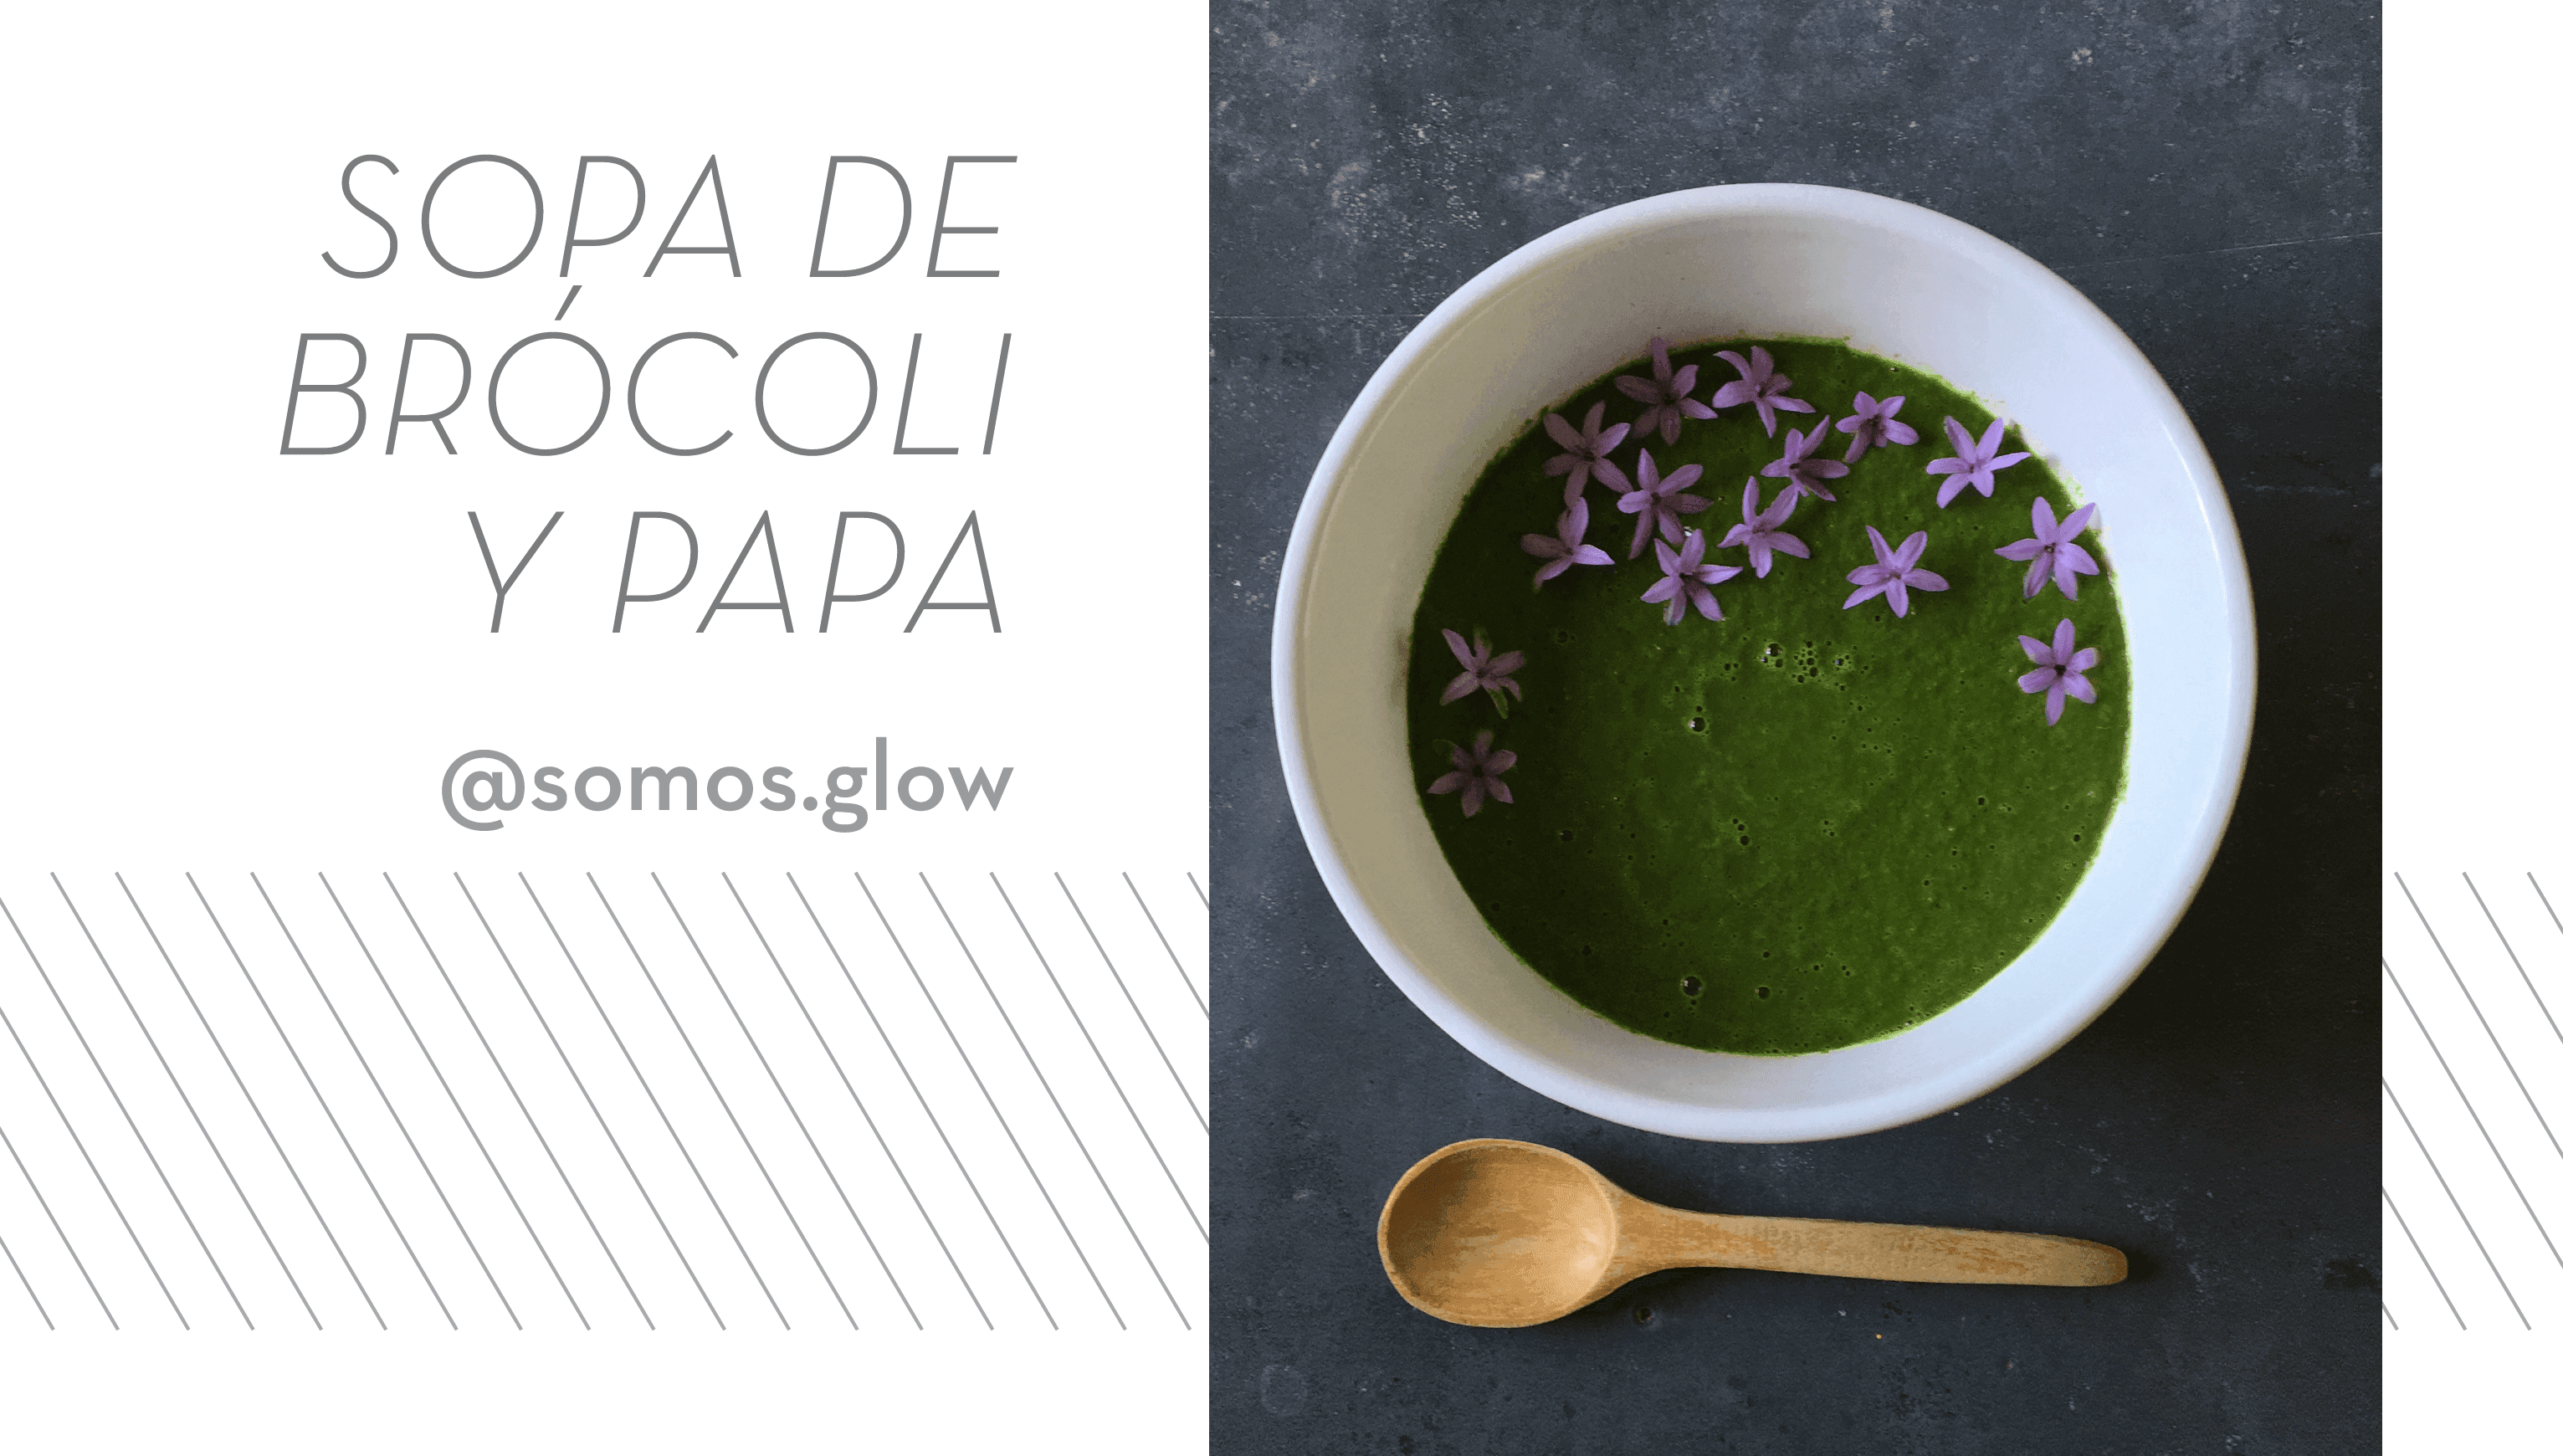 Sopa de brócoli y papa